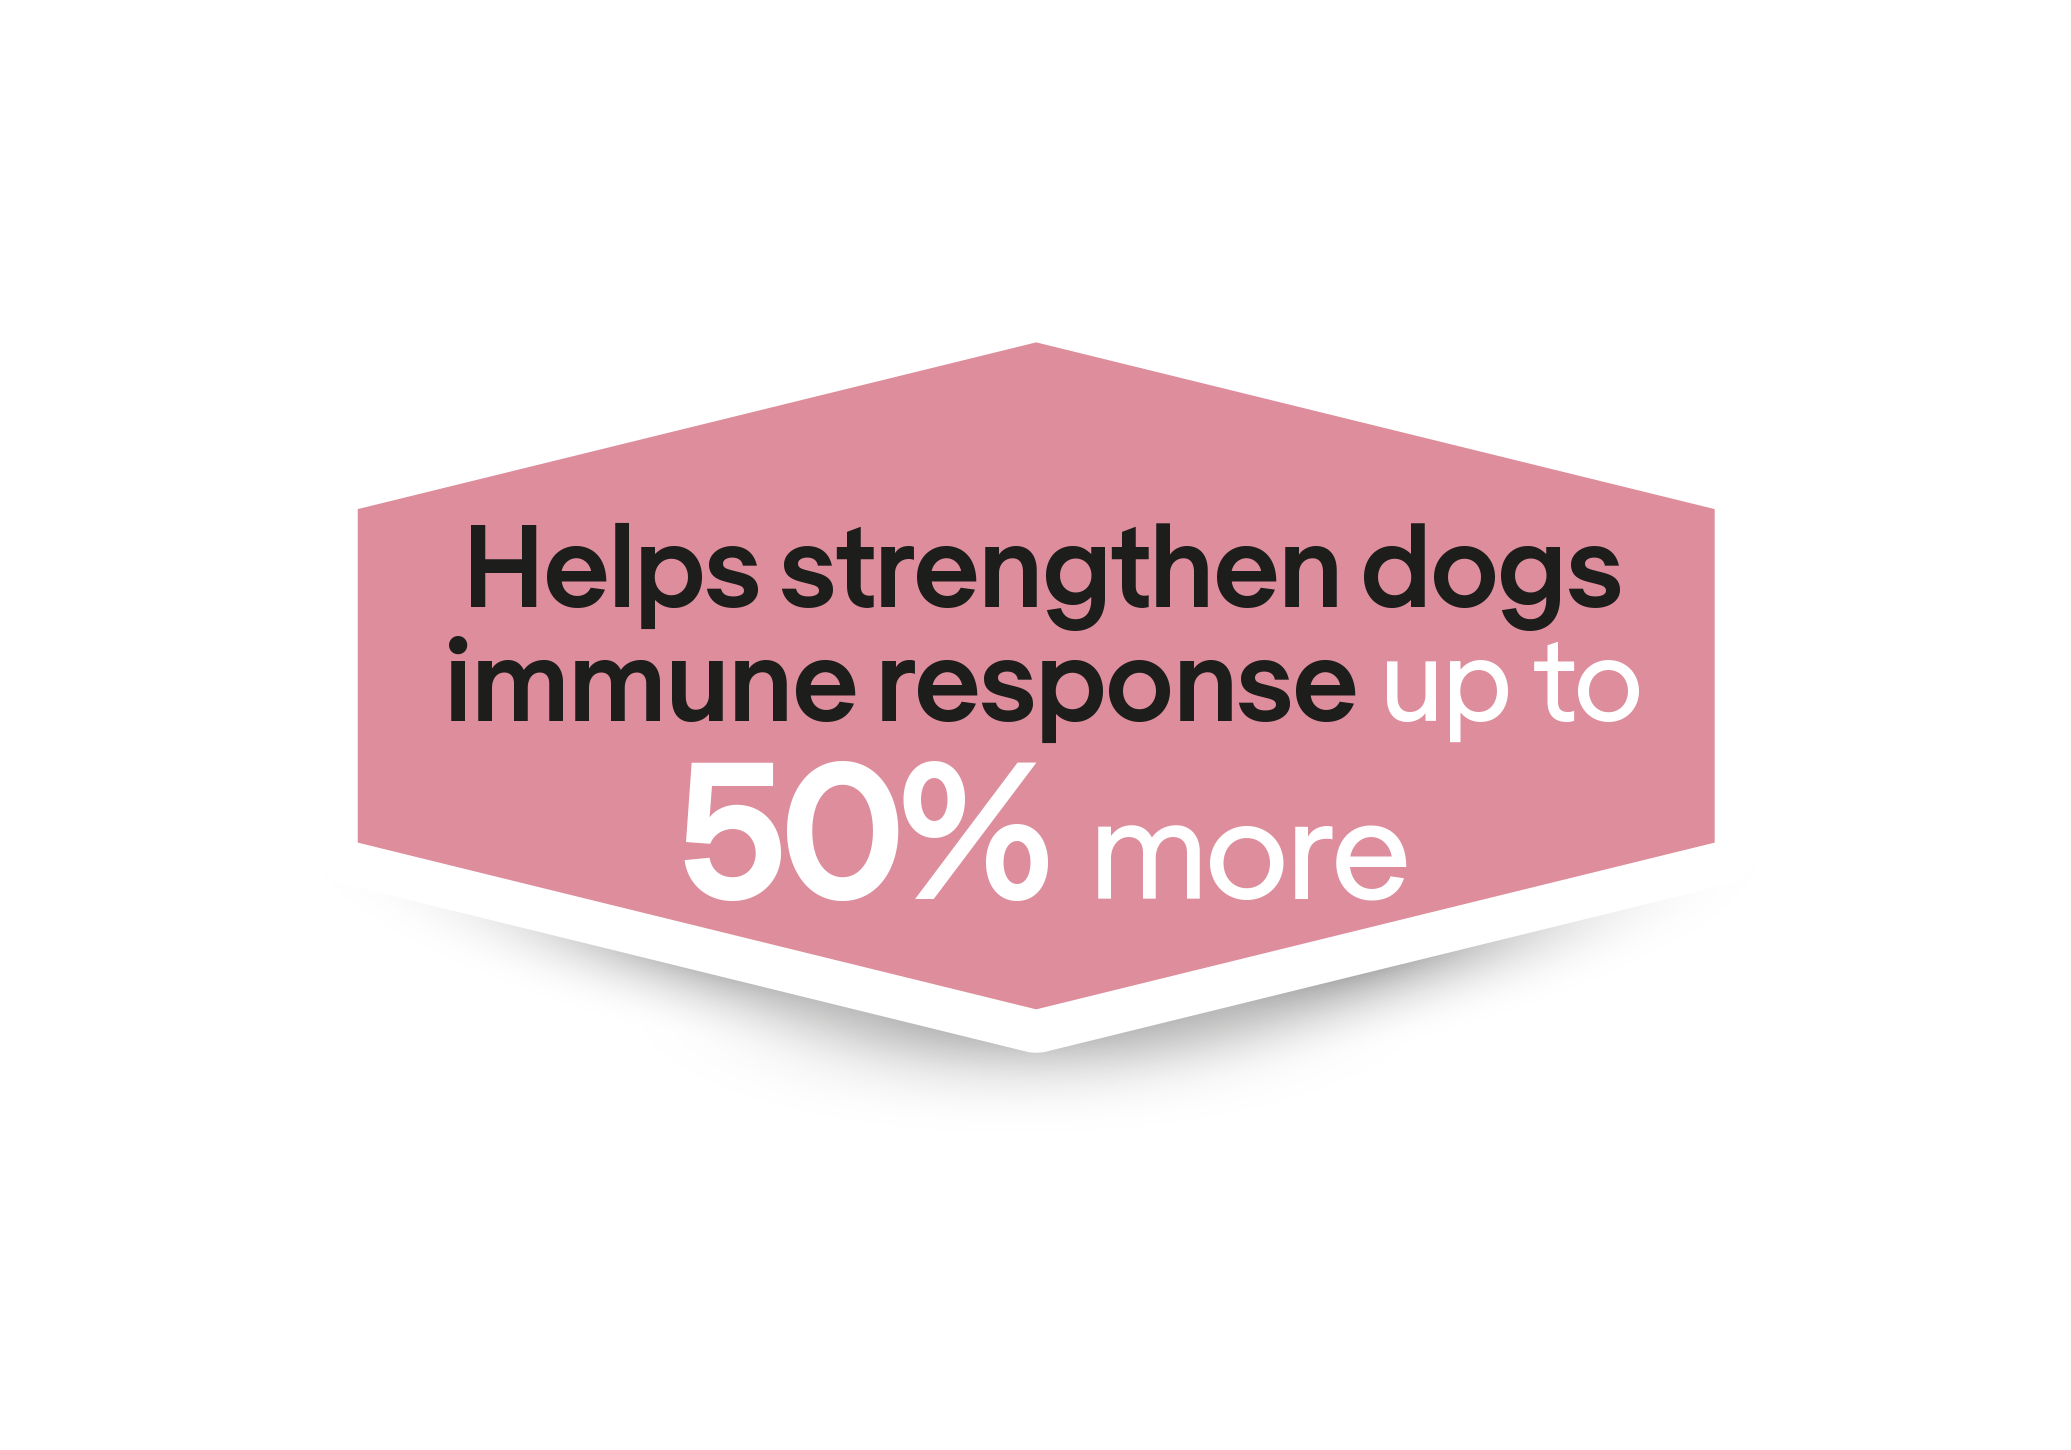 Βοηθά στην ενίσχυση της ανοσολογικής απόκρισης των σκύλων έως και 50% περισσότερο